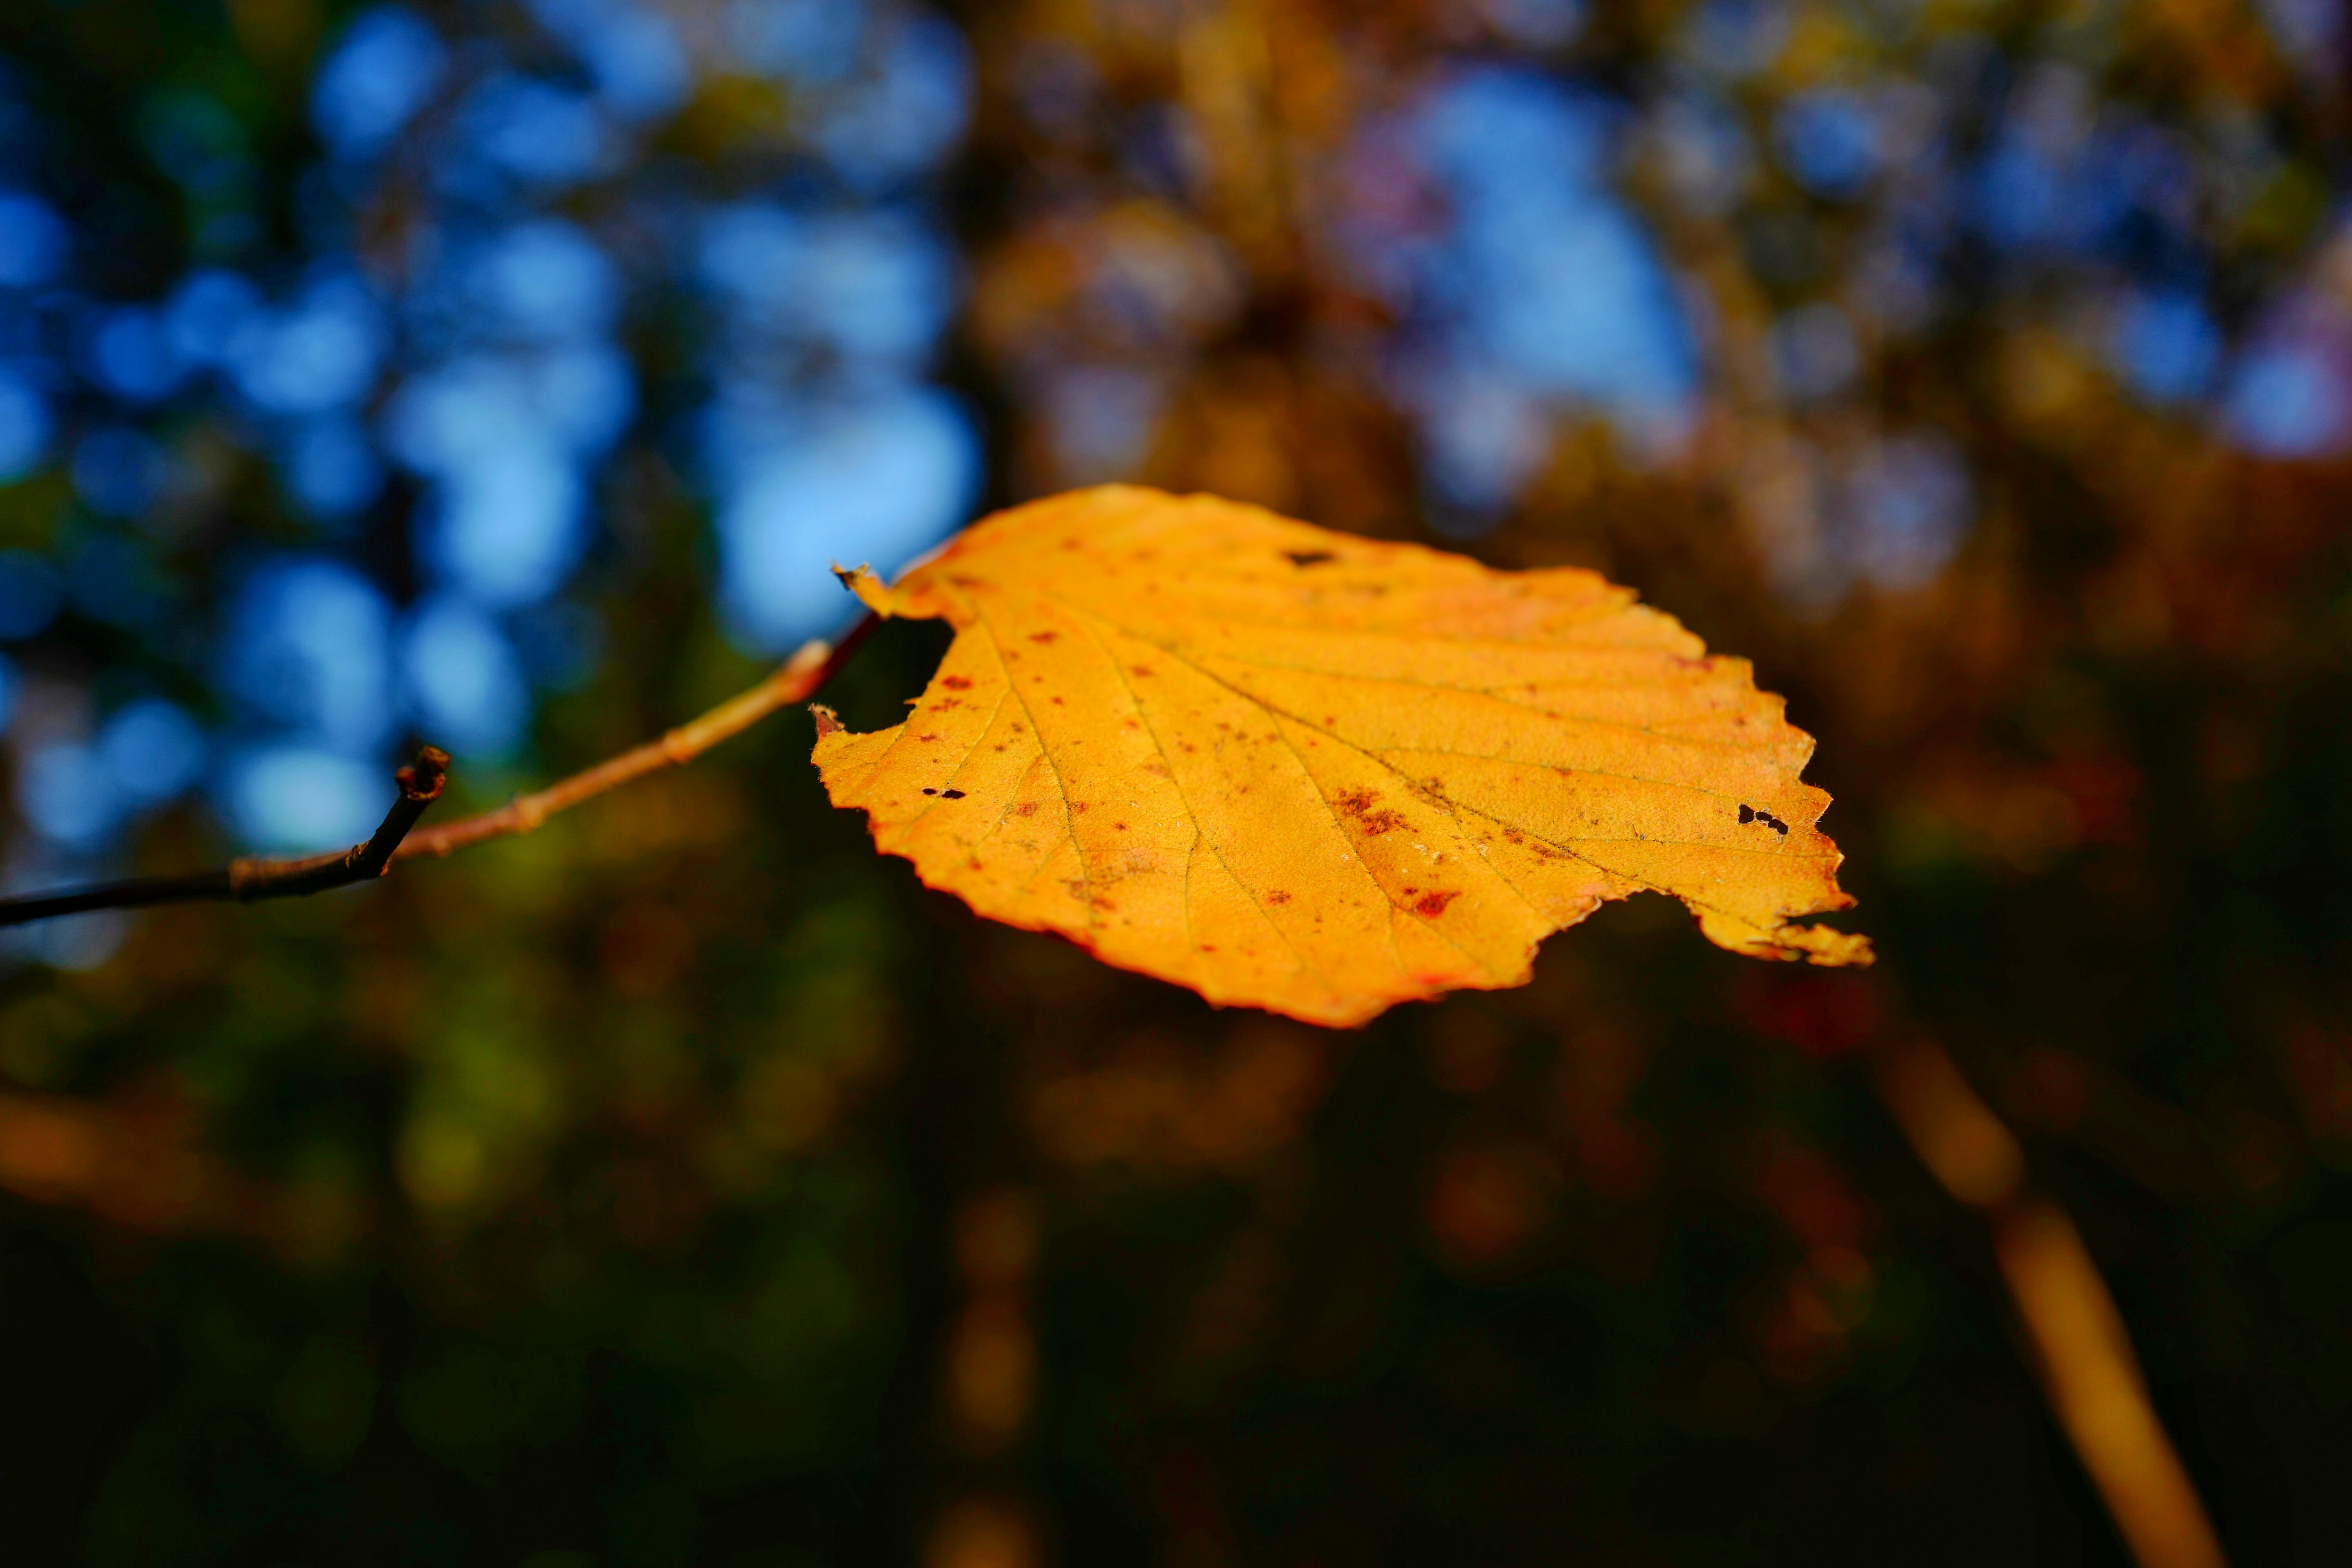 yellow leaf in tilt shift lens